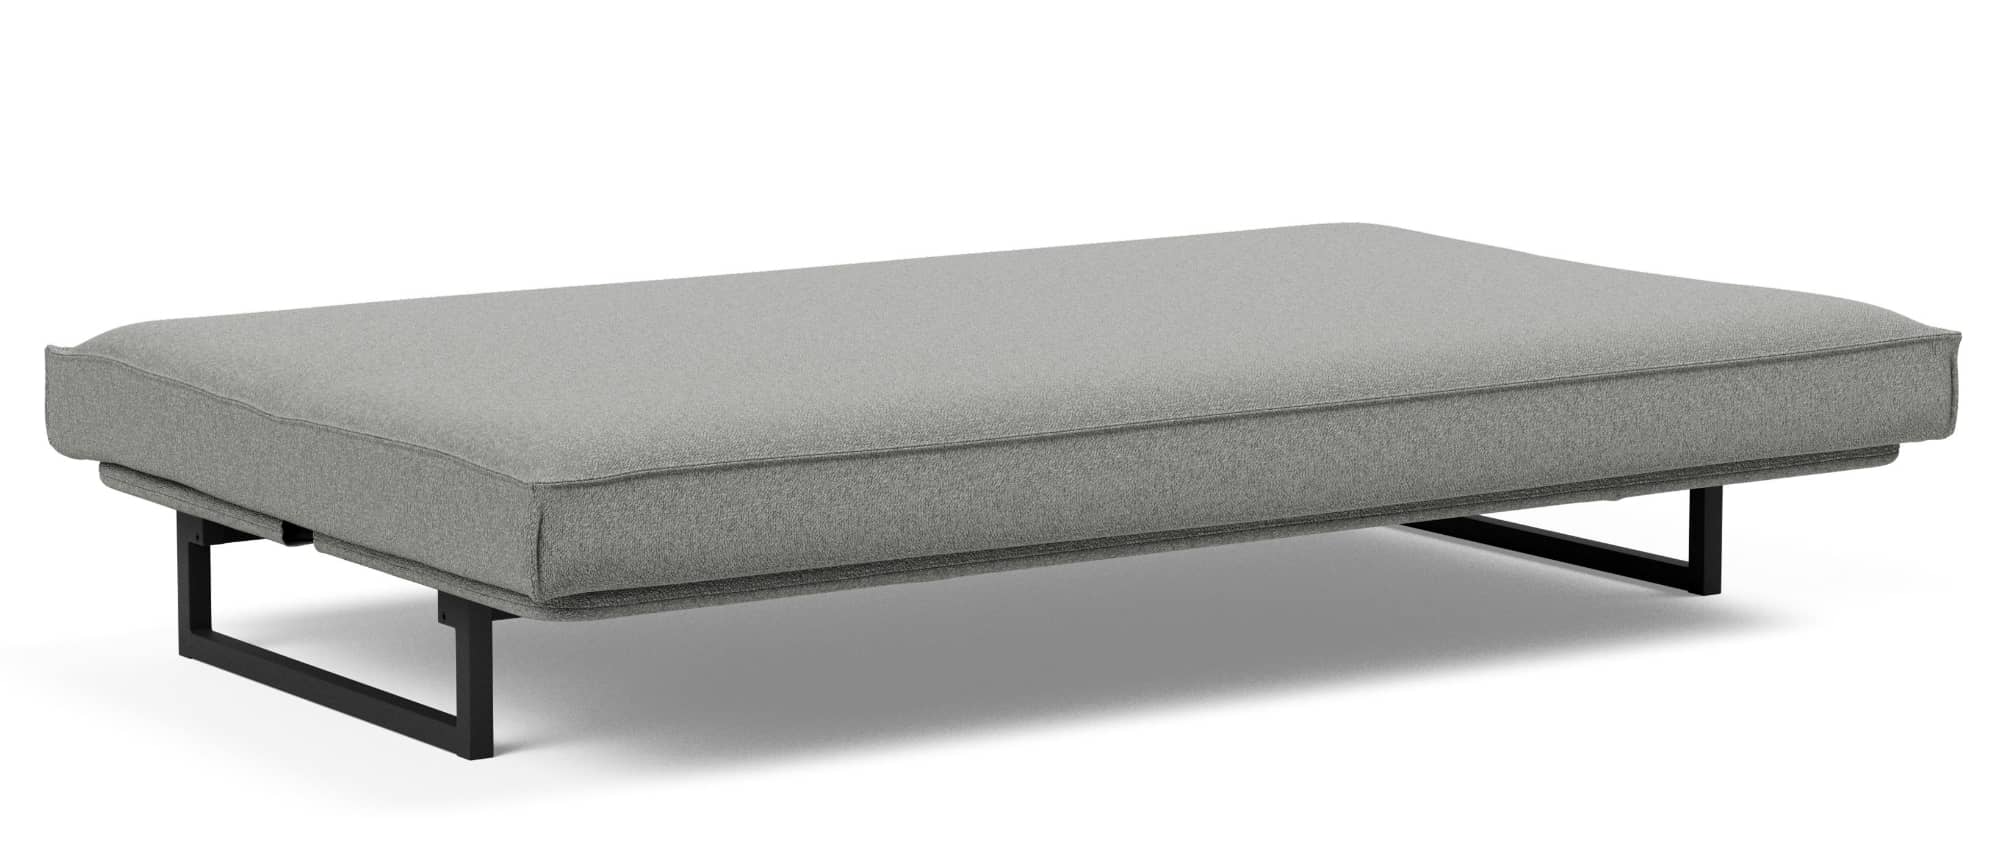 FRACTION Schlafsofa von Innovation, Sofabett mit Matratze und Lattenrost, Dauerschläfer - 120x200 cm oder 140x200 cm